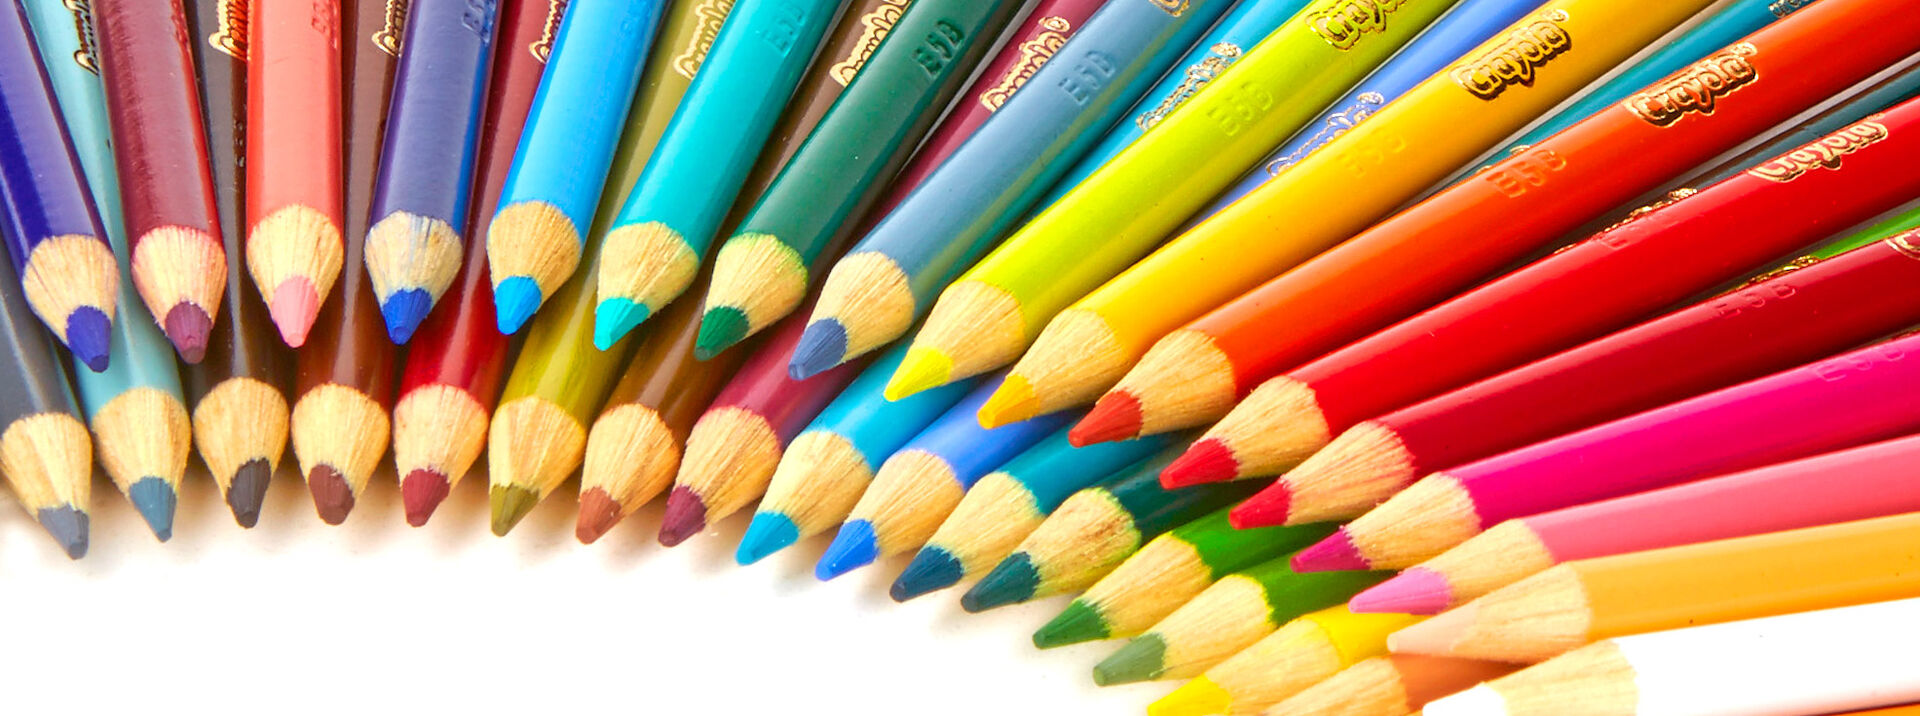 Crayola Colored Pencils - Shop Colored Pencils | Crayola